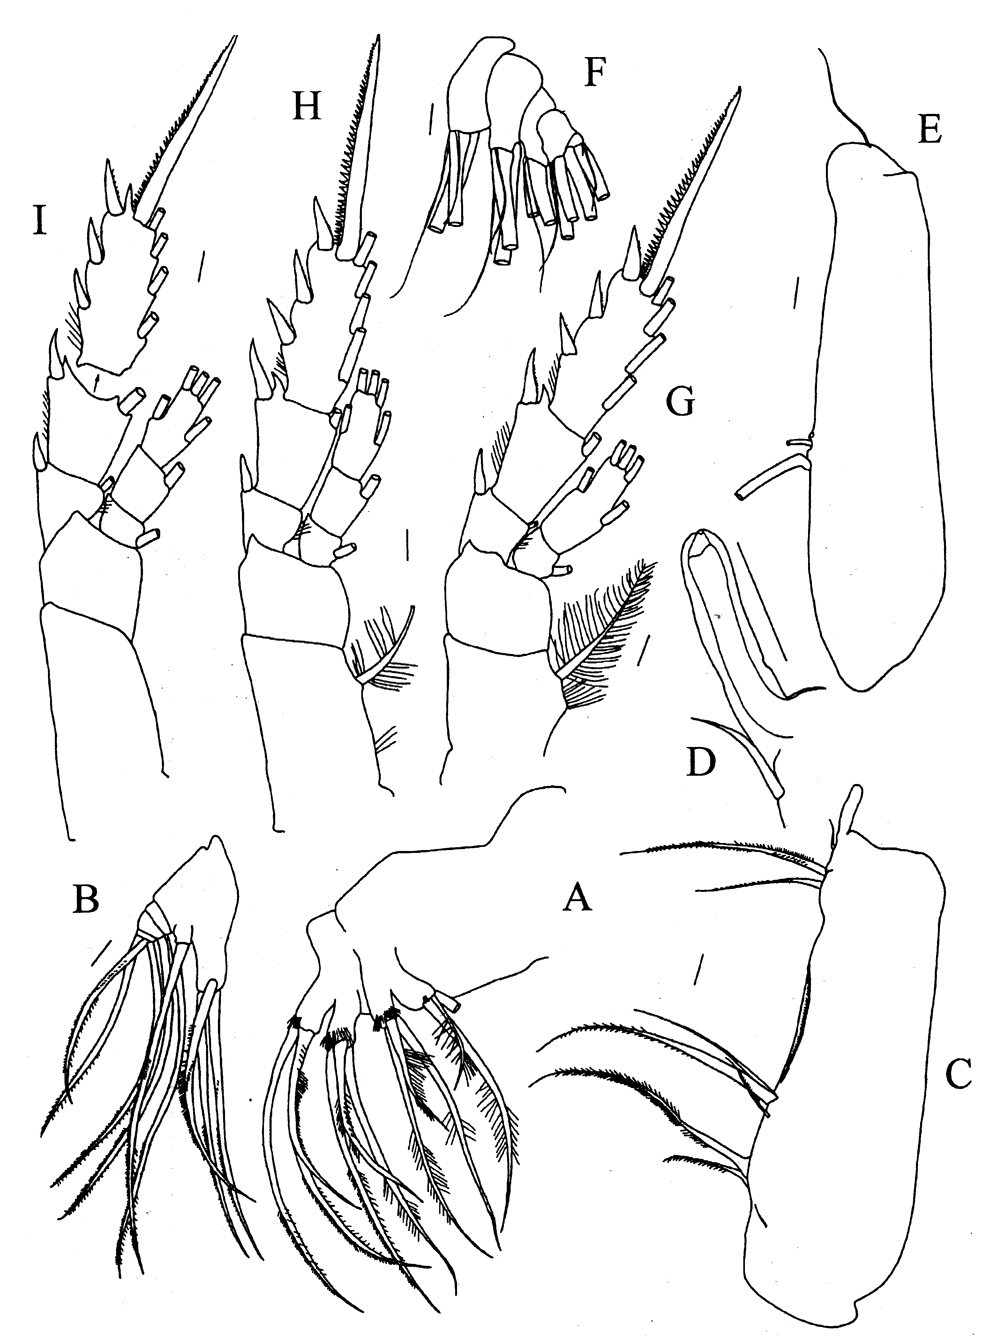 Espèce Pseudeuchaeta acuticornis - Planche 3 de figures morphologiques